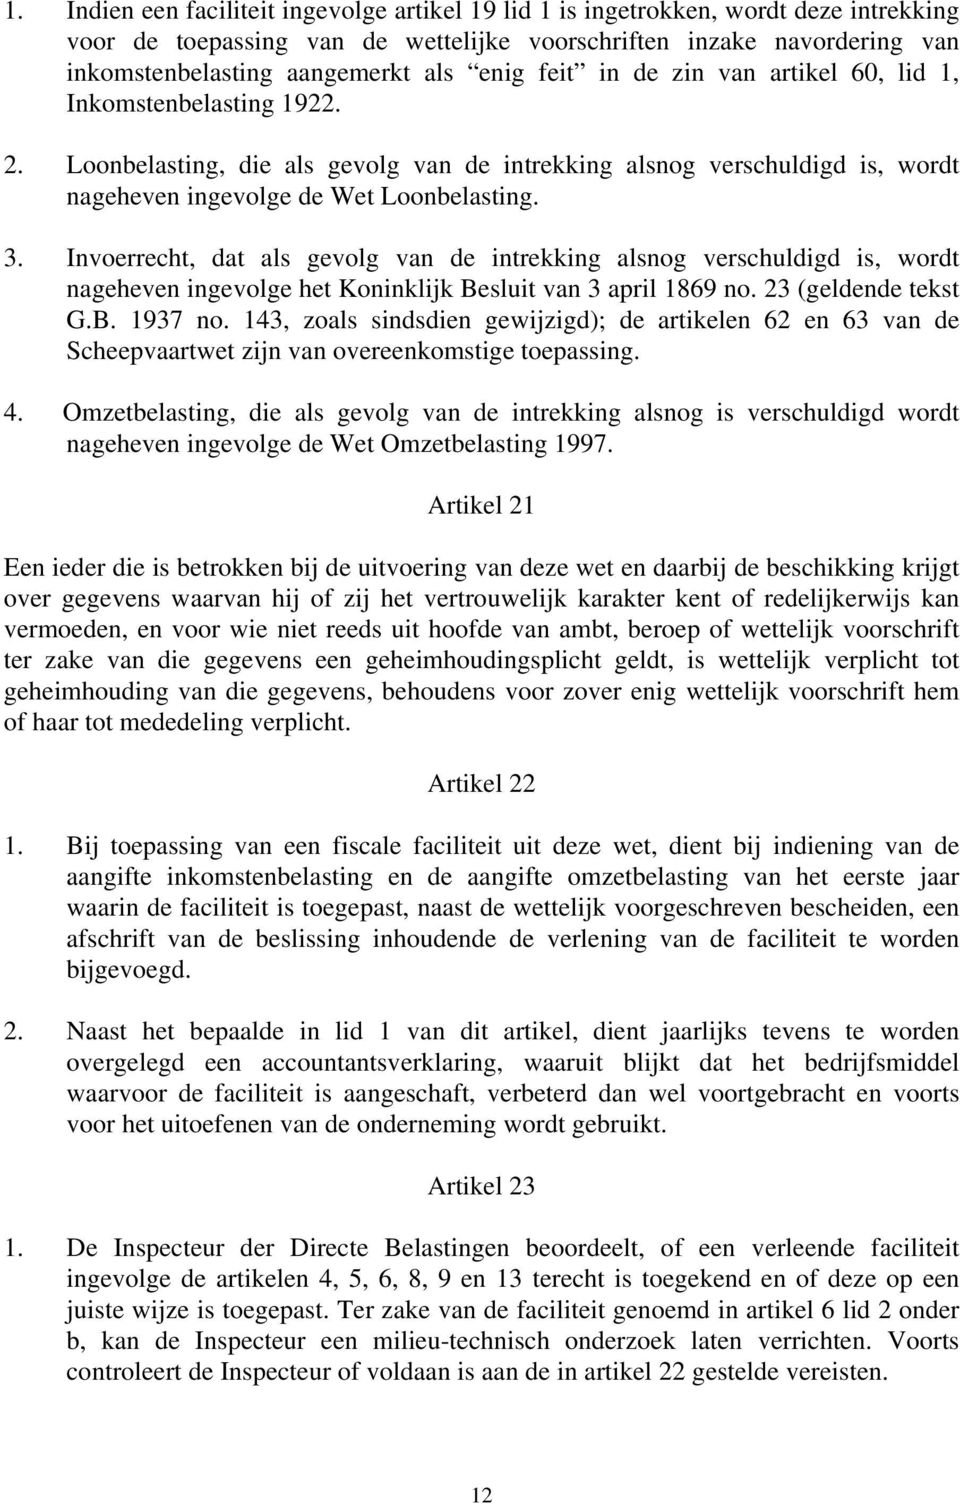 Invoerrecht, dat als gevolg van de intrekking alsnog verschuldigd is, wordt nageheven ingevolge het Koninklijk Besluit van 3 april 1869 no. 23 (geldende tekst G.B. 1937 no.